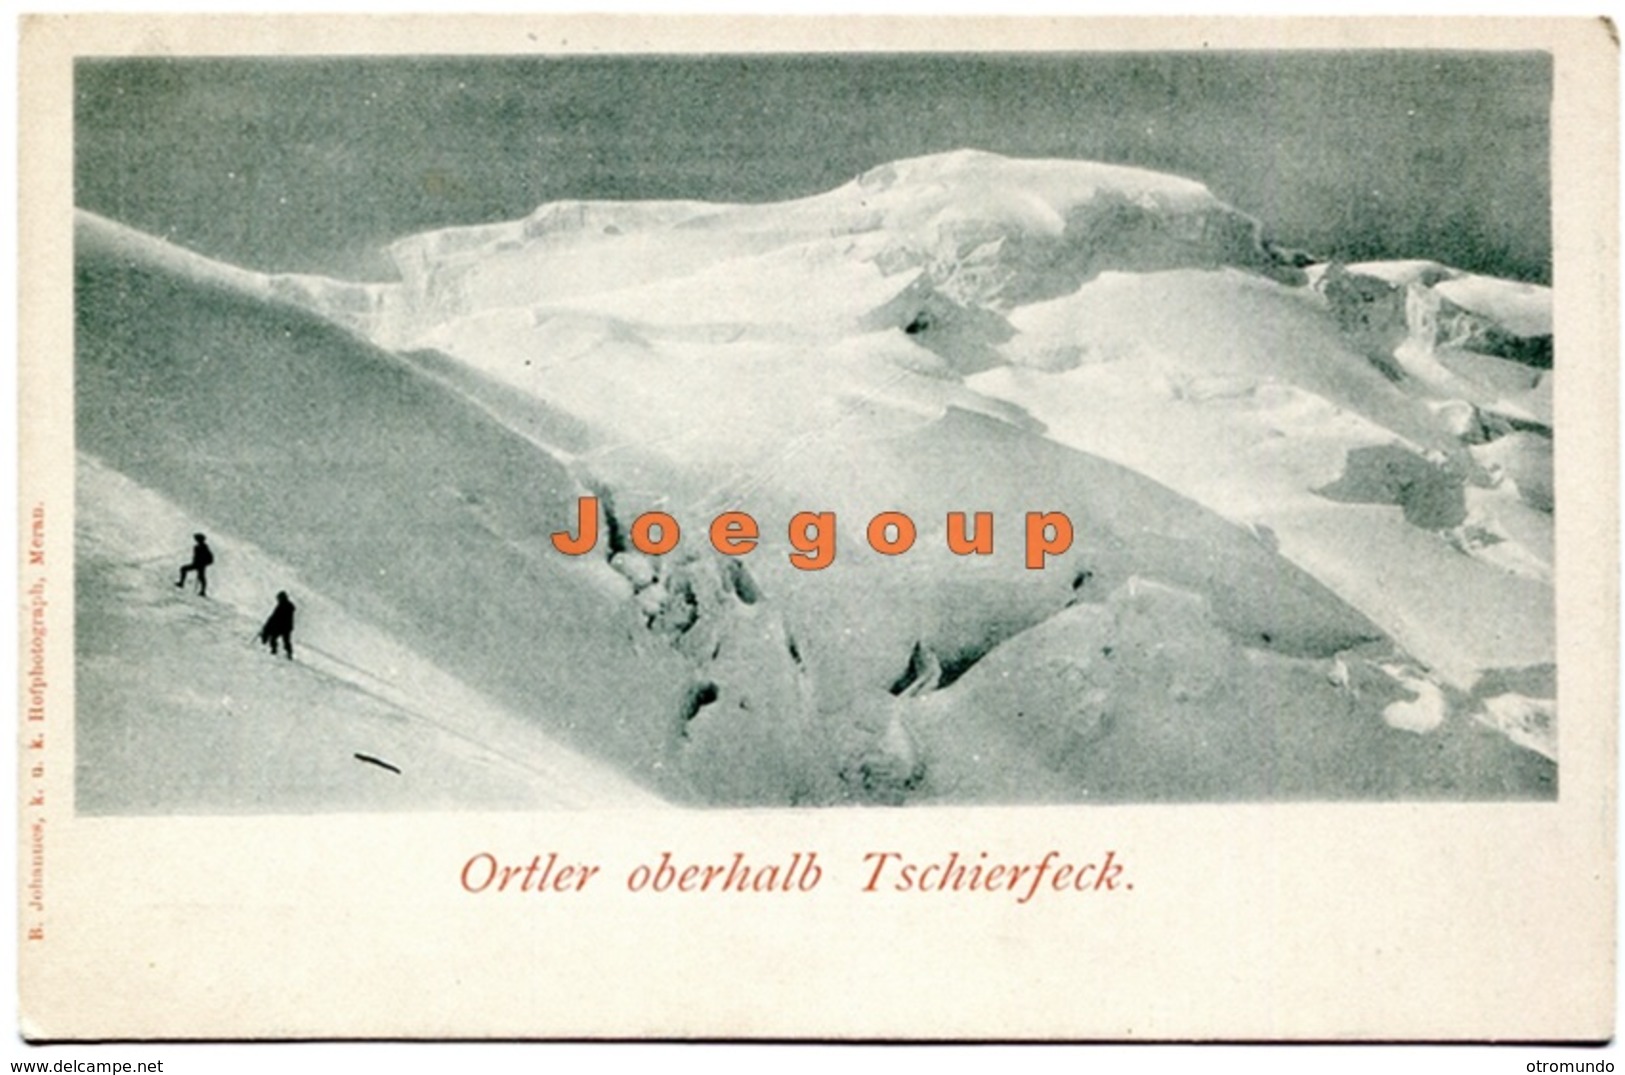 Postkarte Johanues Meran Mountaineering Alpinism Bergsteigen Ortler Oberhalb Tschierfeck - Mountaineering, Alpinism